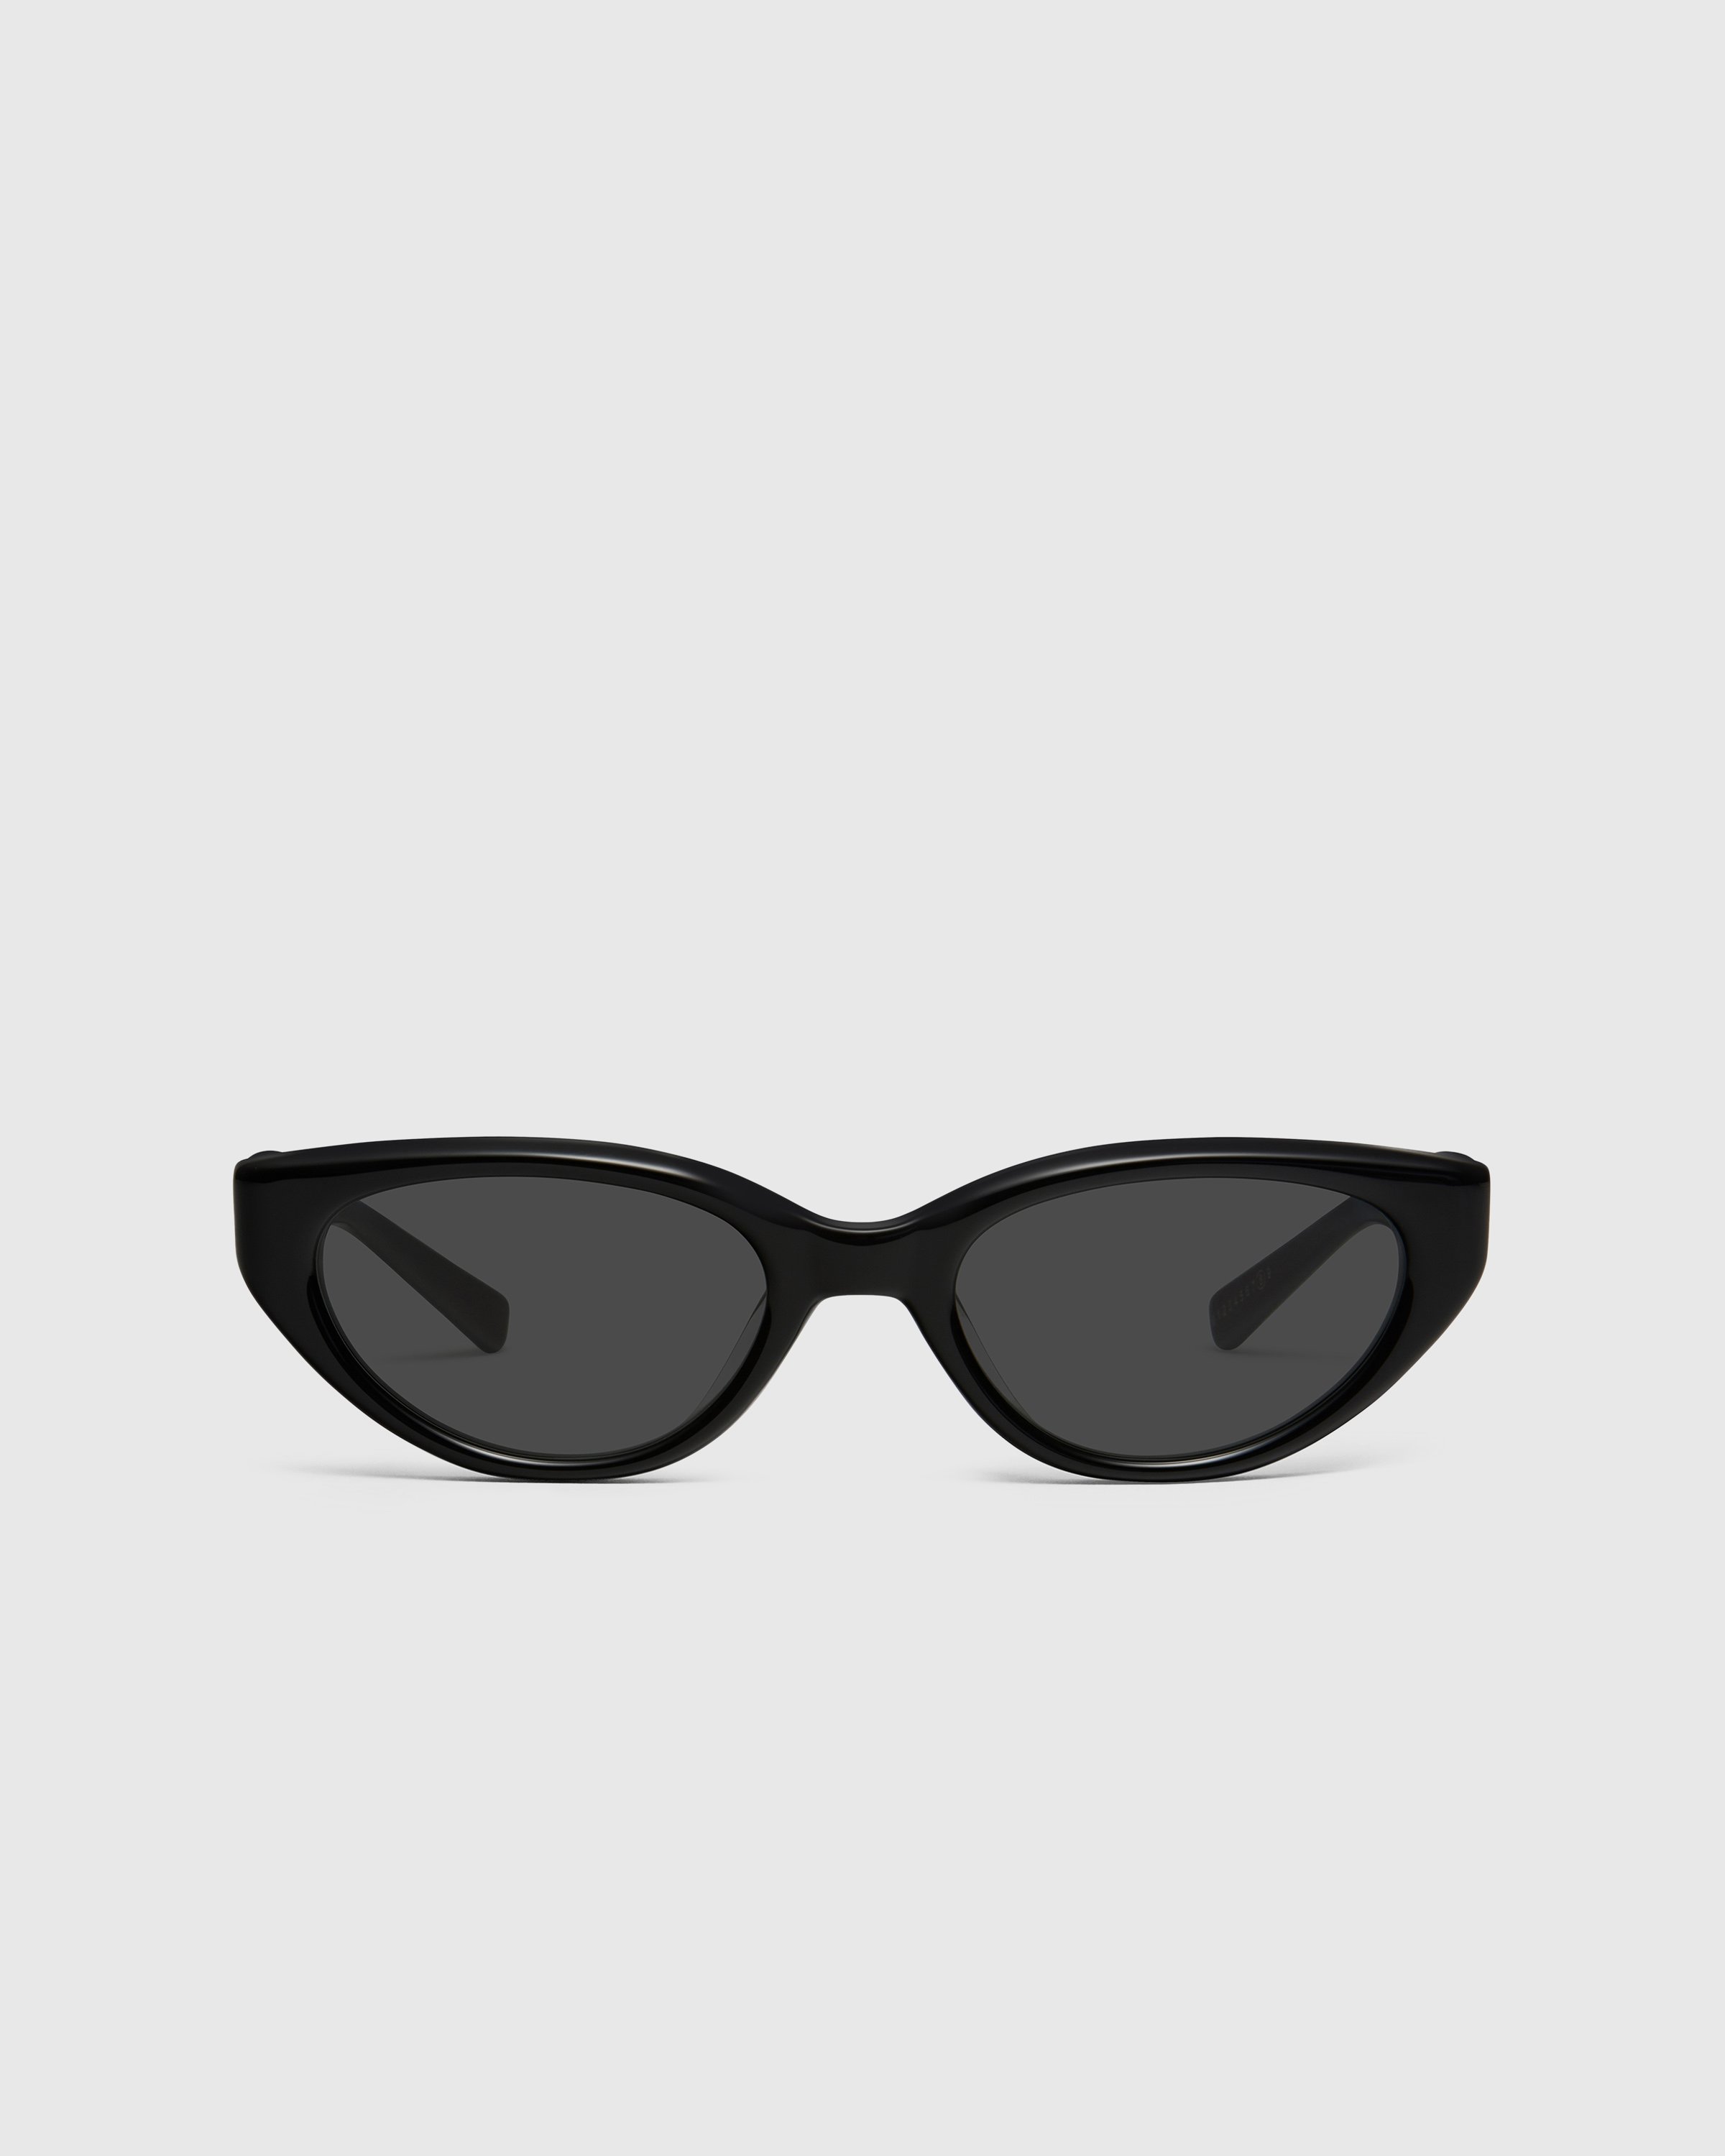 Maison Margiela x Gentle Monster - Sunglasses MM108-01 - Accessories - Black - Image 1